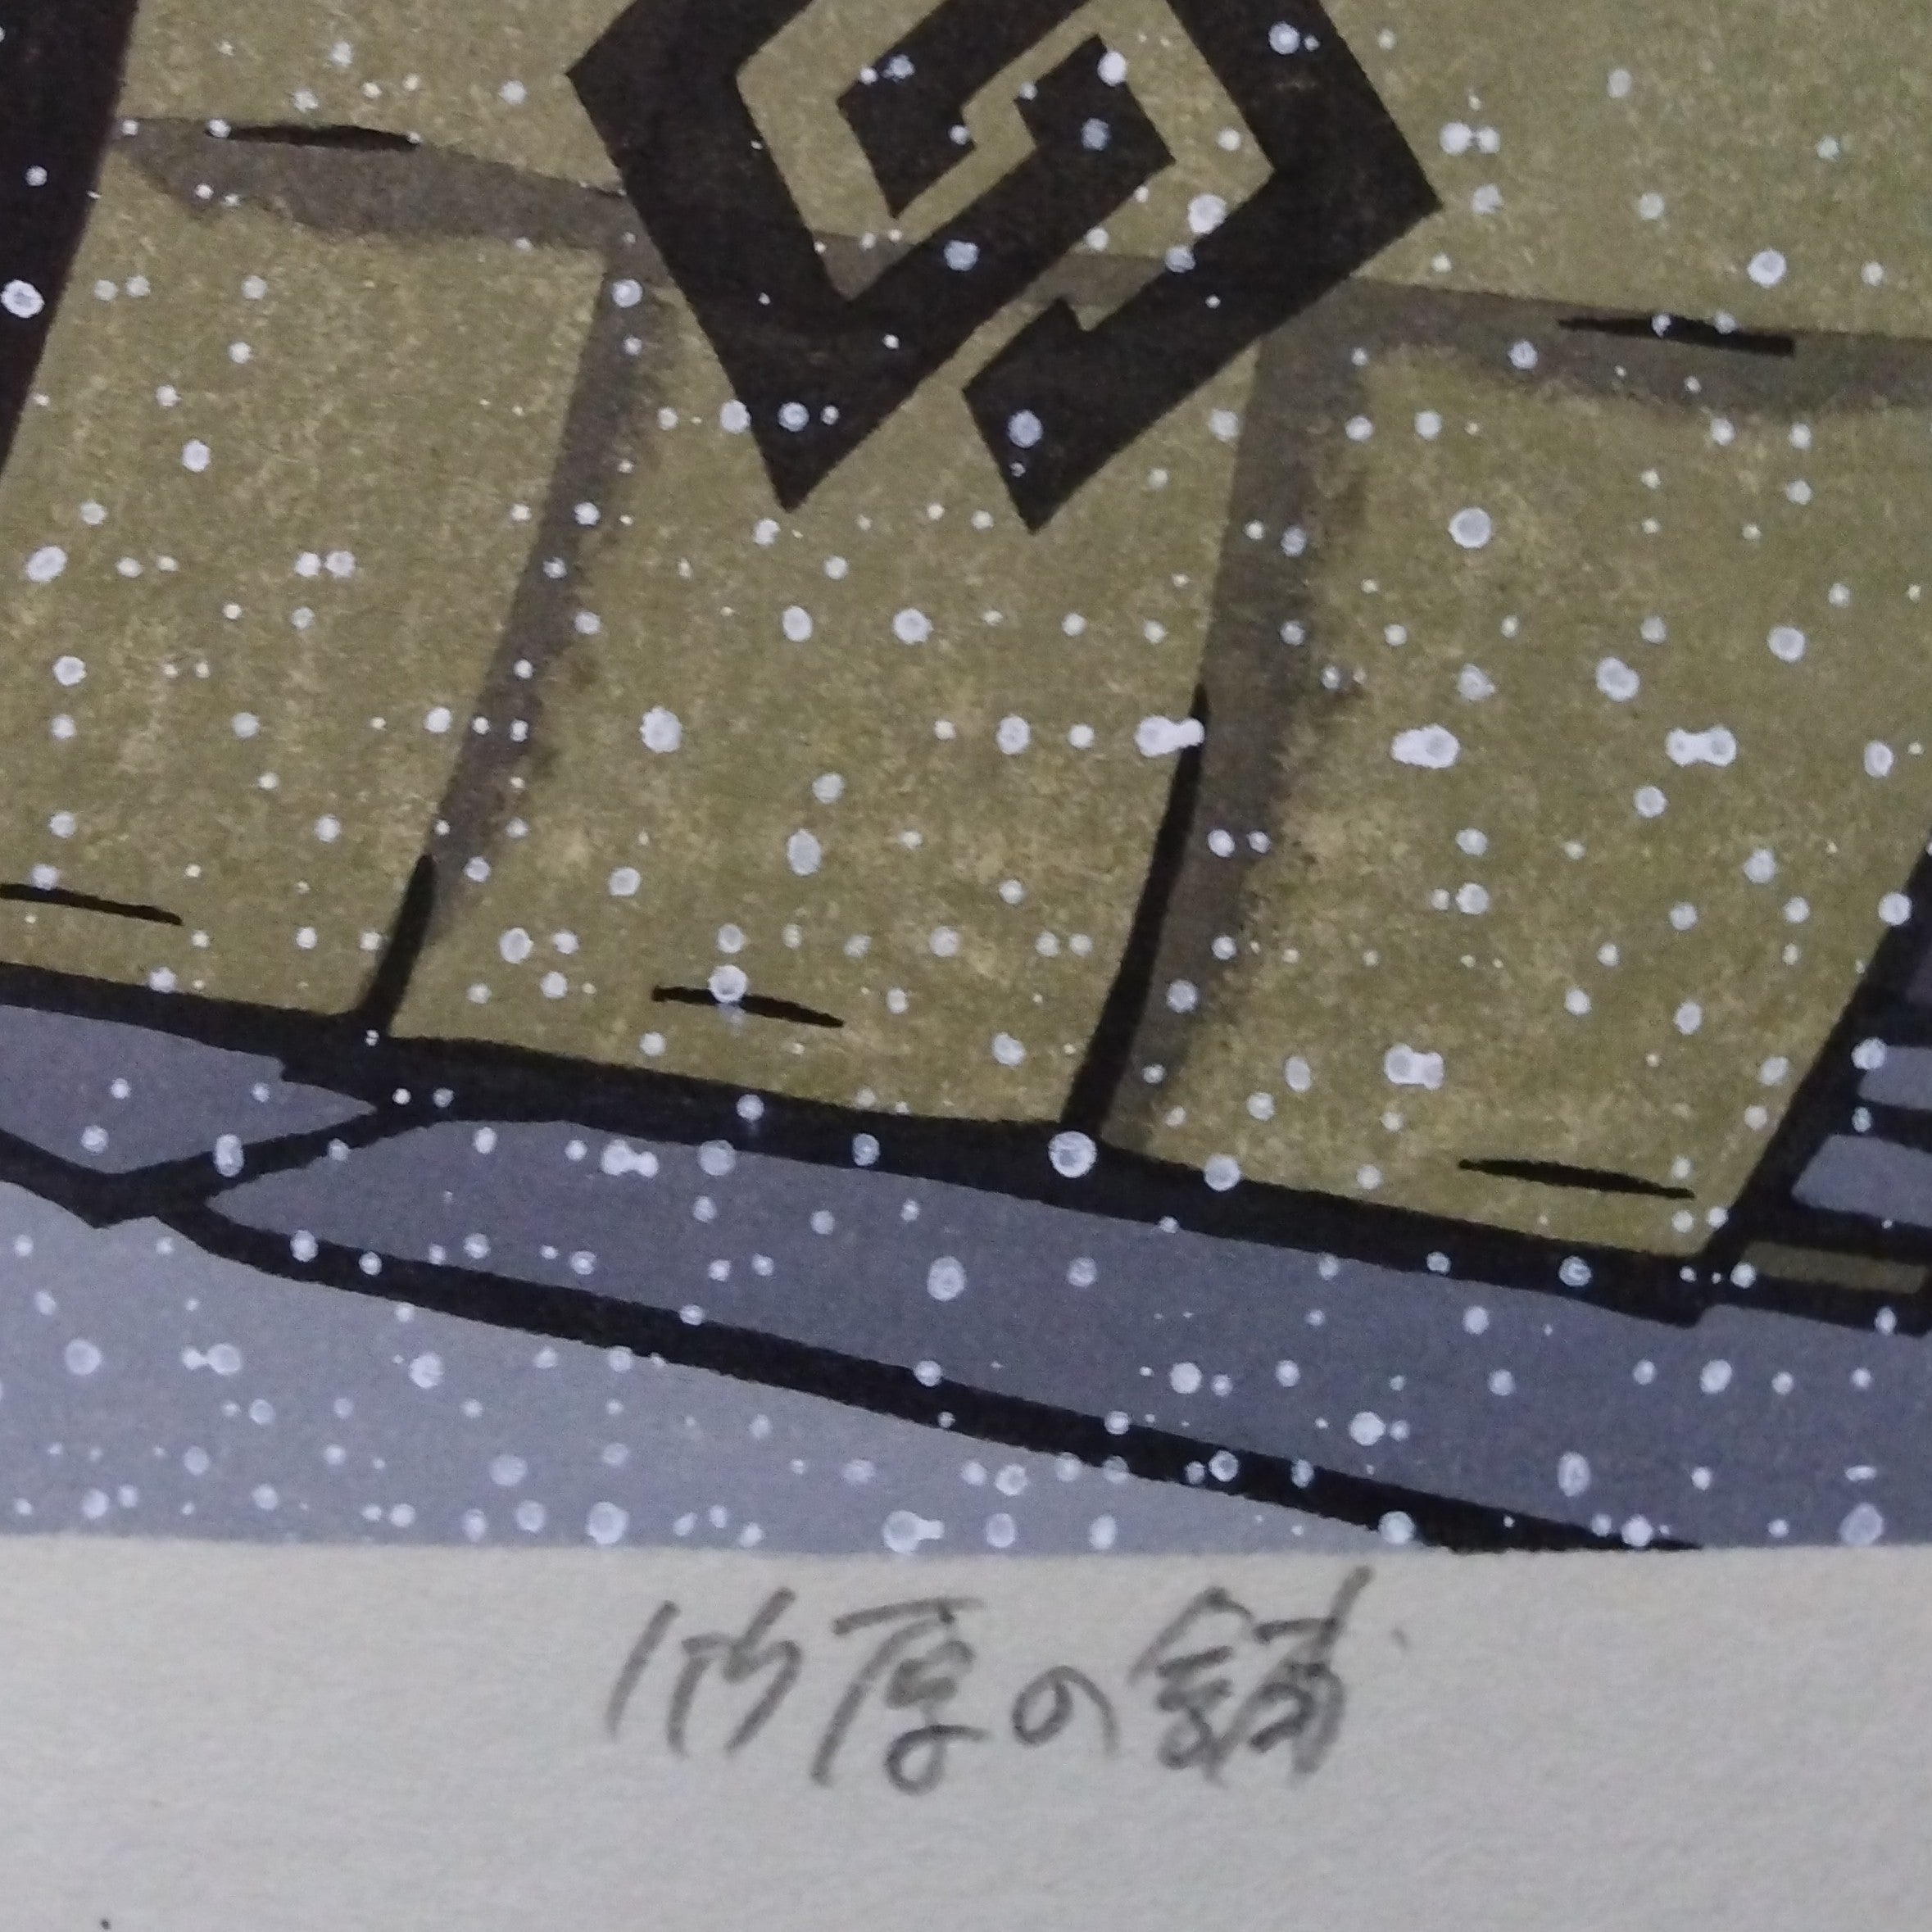 Woodblock Print by Katsuyuki Nishijima, "Shop in Takehara" (Takehara no Ho)